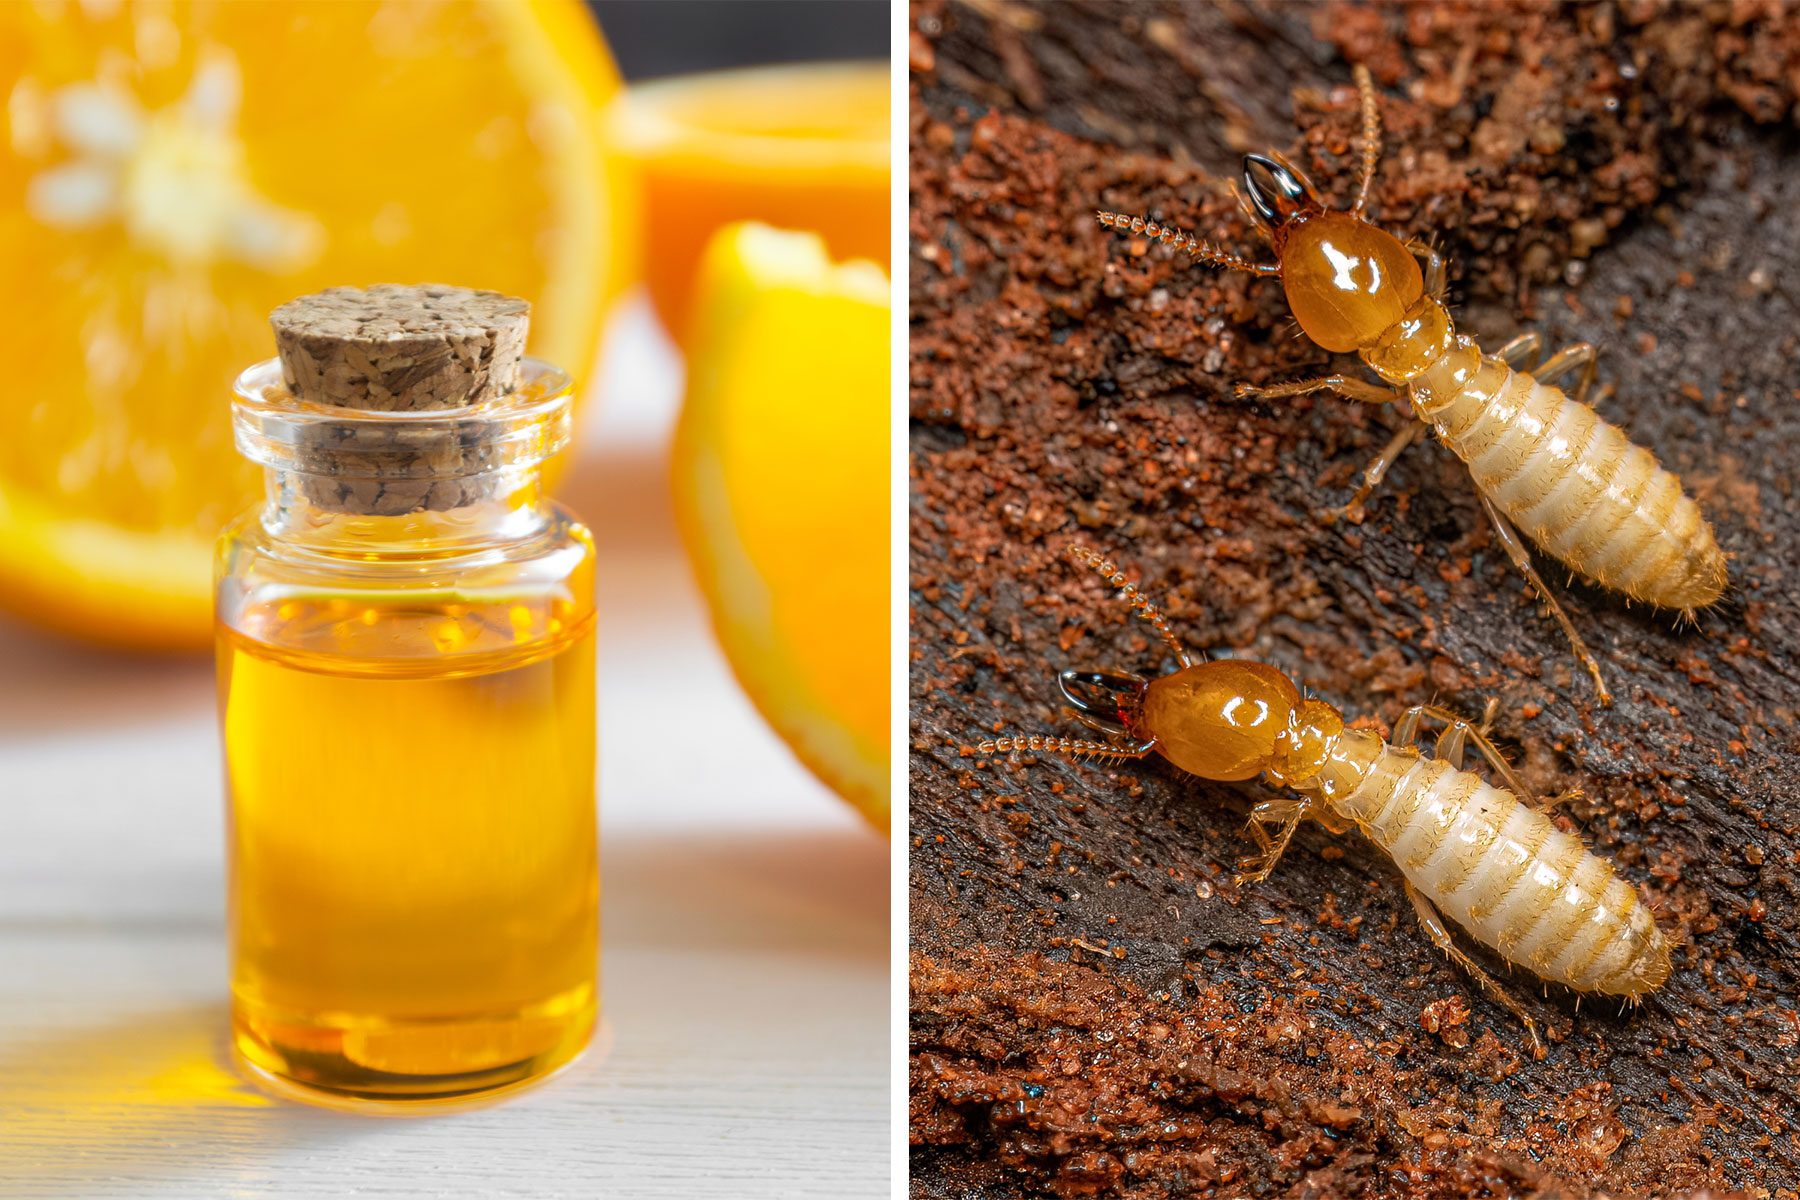 Orange Oil and Termites